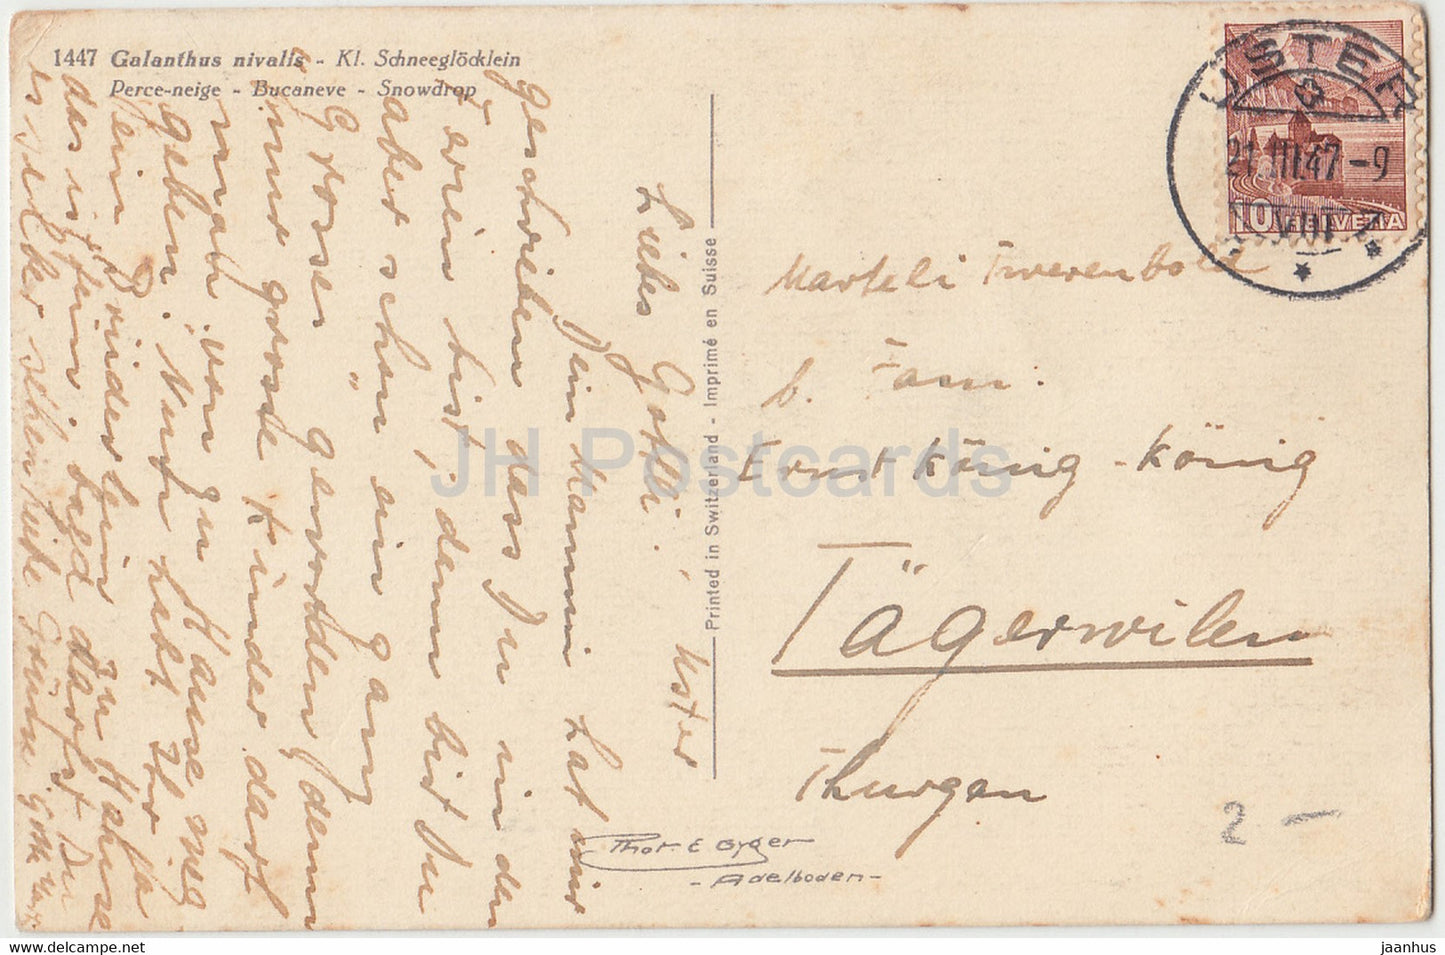 Galanthus Nivalis Kl Schneeglocklein - Schneeglöckchen - Blumen - 1447 - alte Postkarte - 1947 - Schweiz - gebraucht